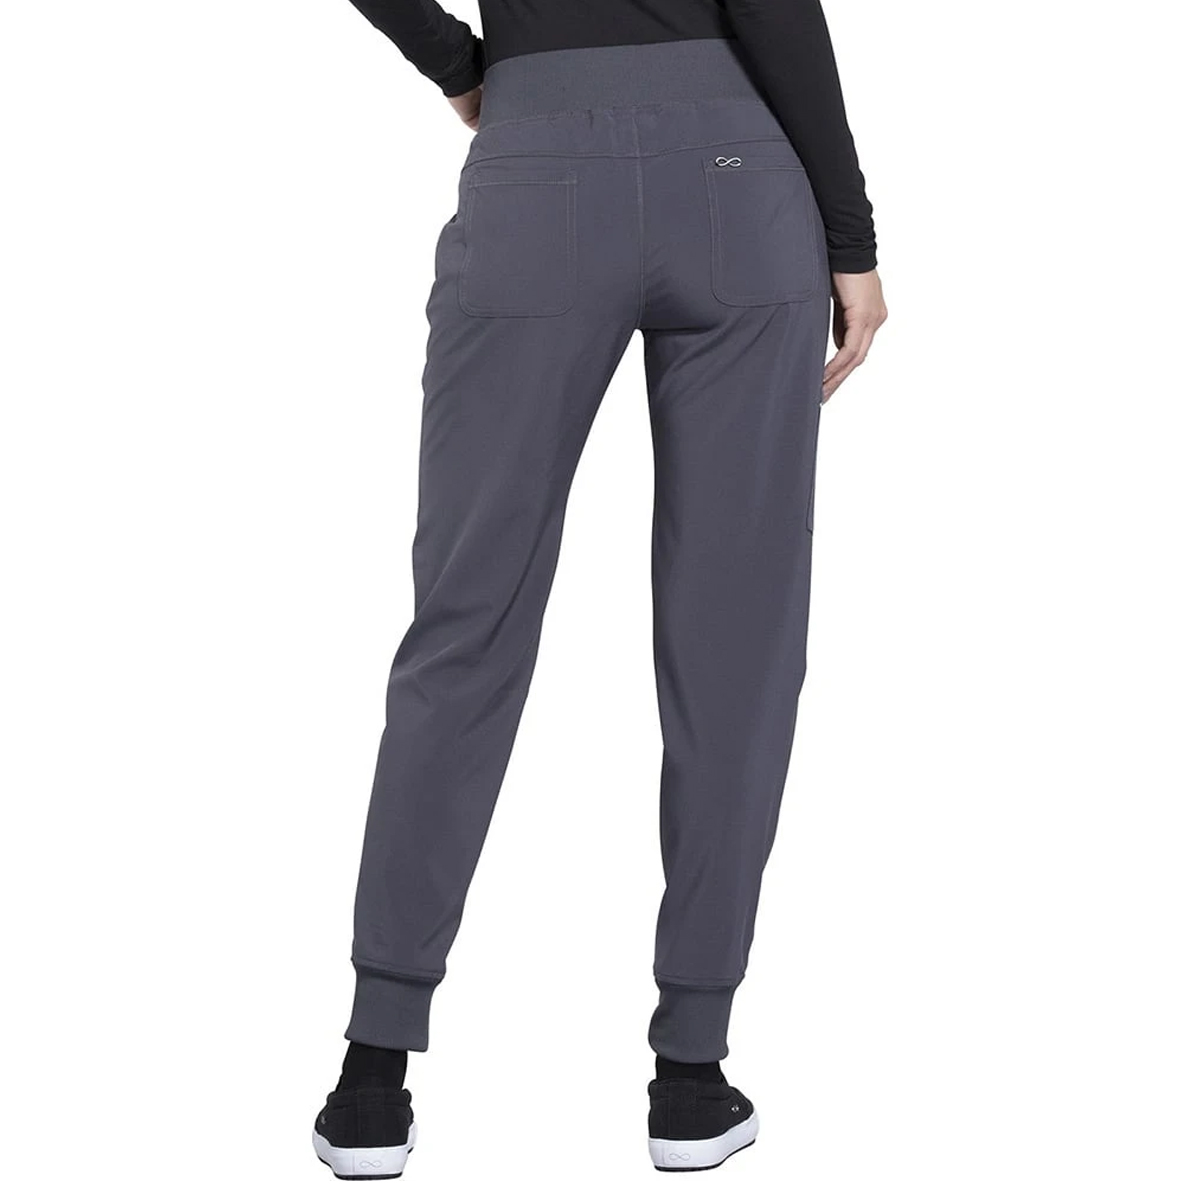 ave Women's Jogger-Style Scrub Pants Black Size XL Petite